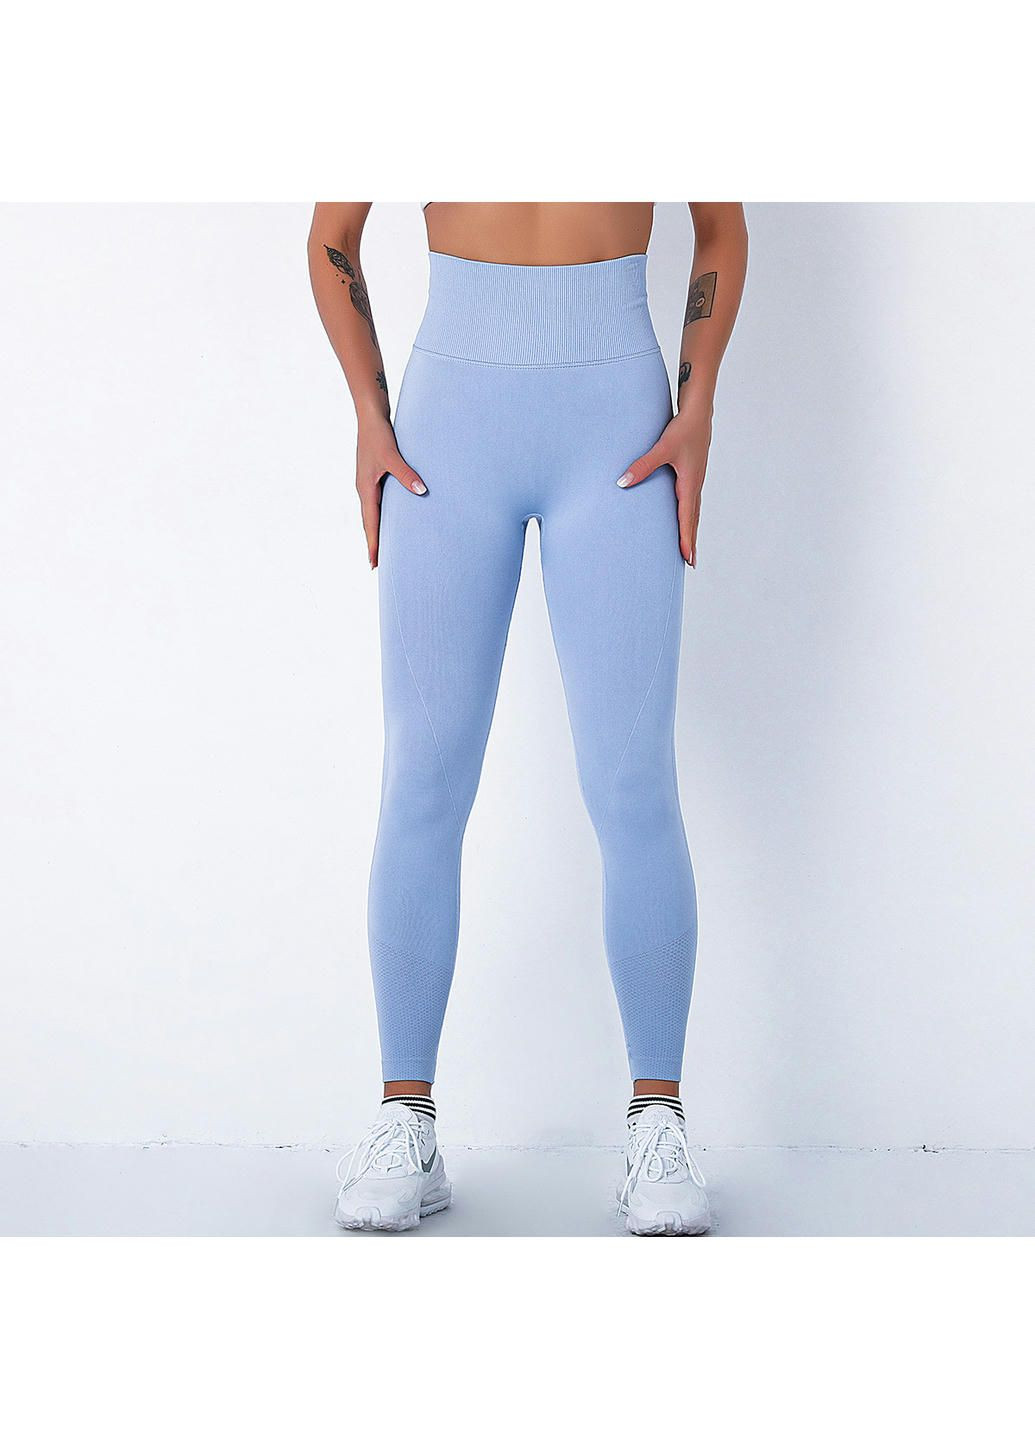 Комбинированные демисезонные леггинсы женские спортивные 10918 xl голубые Fashion